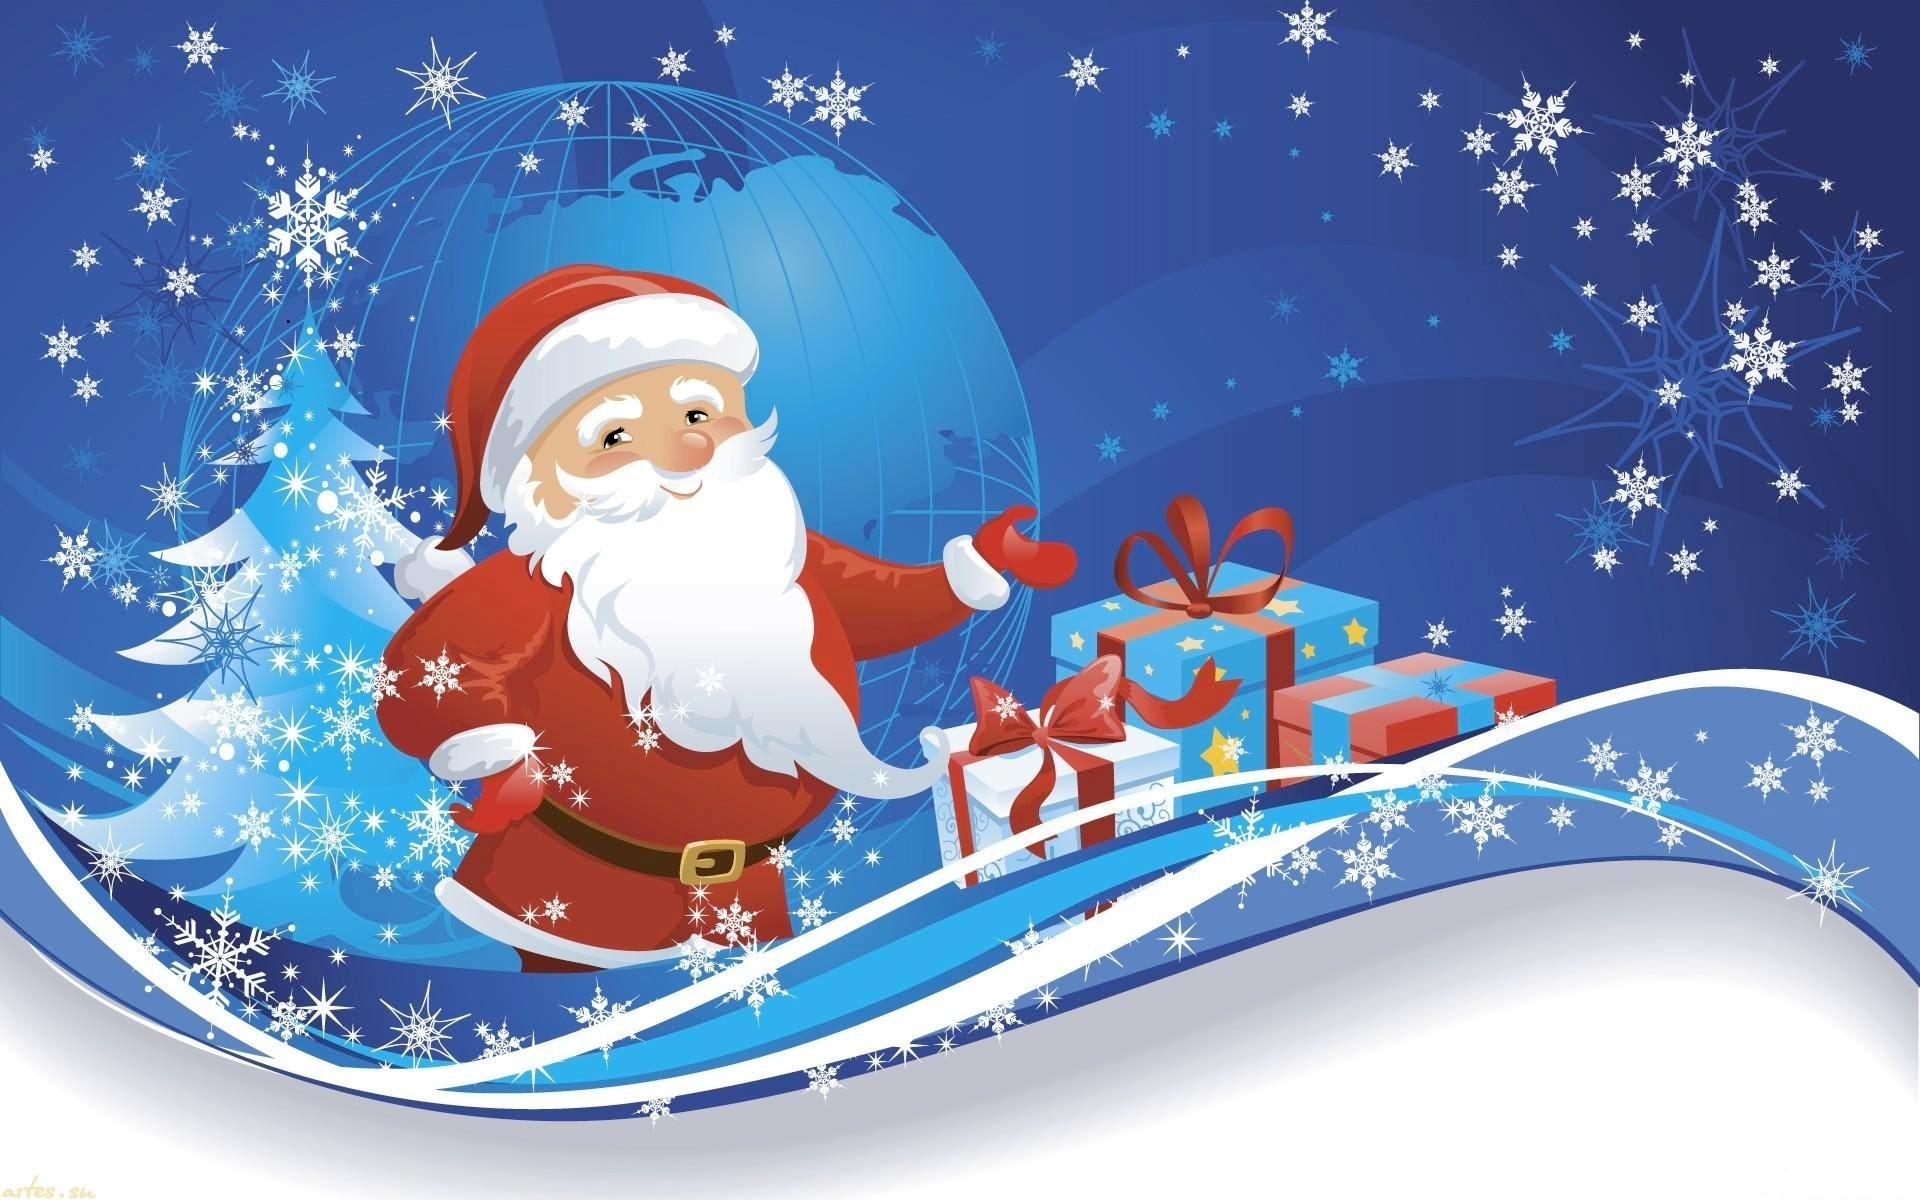 산타 클로스 배경 화면 무료 다운로드,산타 클로스,크리스마스 이브,크리스마스,만화,겨울